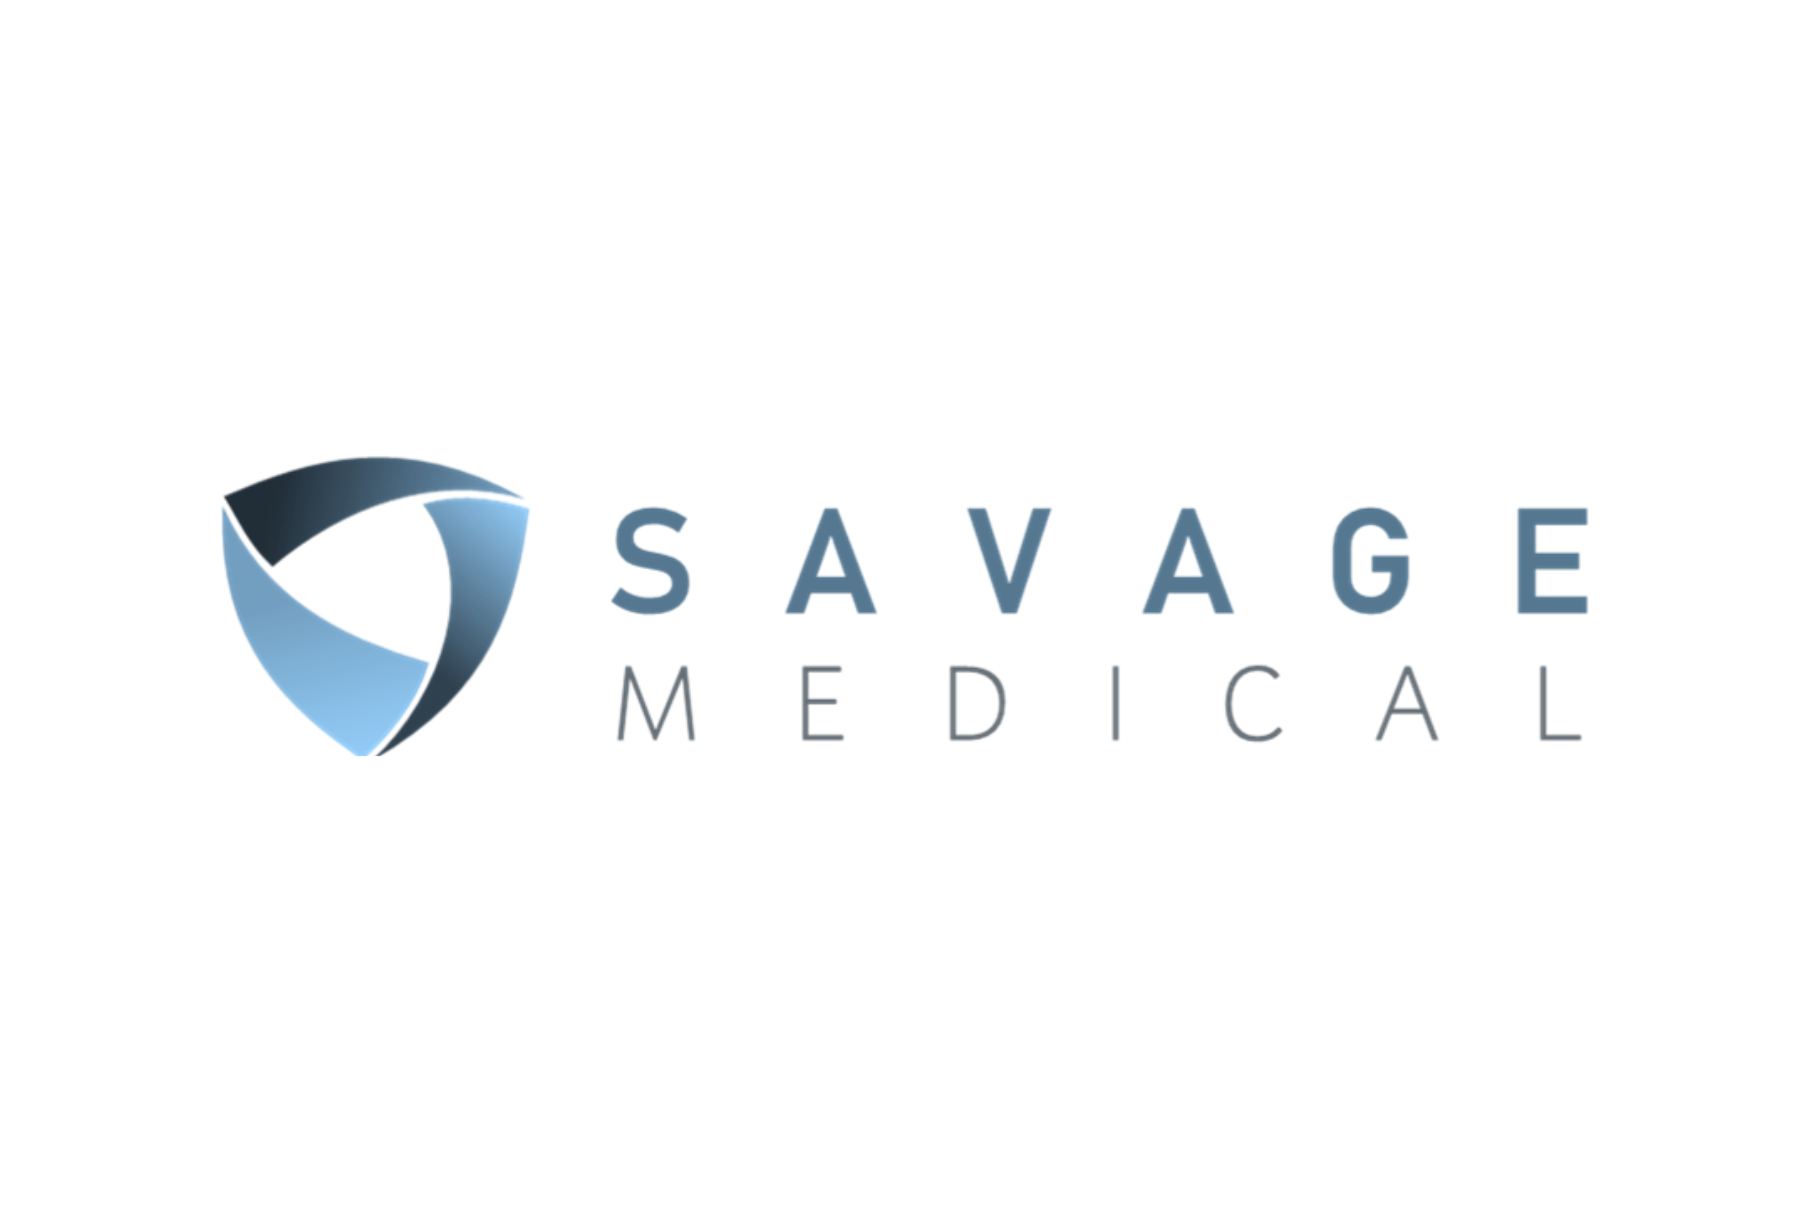 Savage Logo